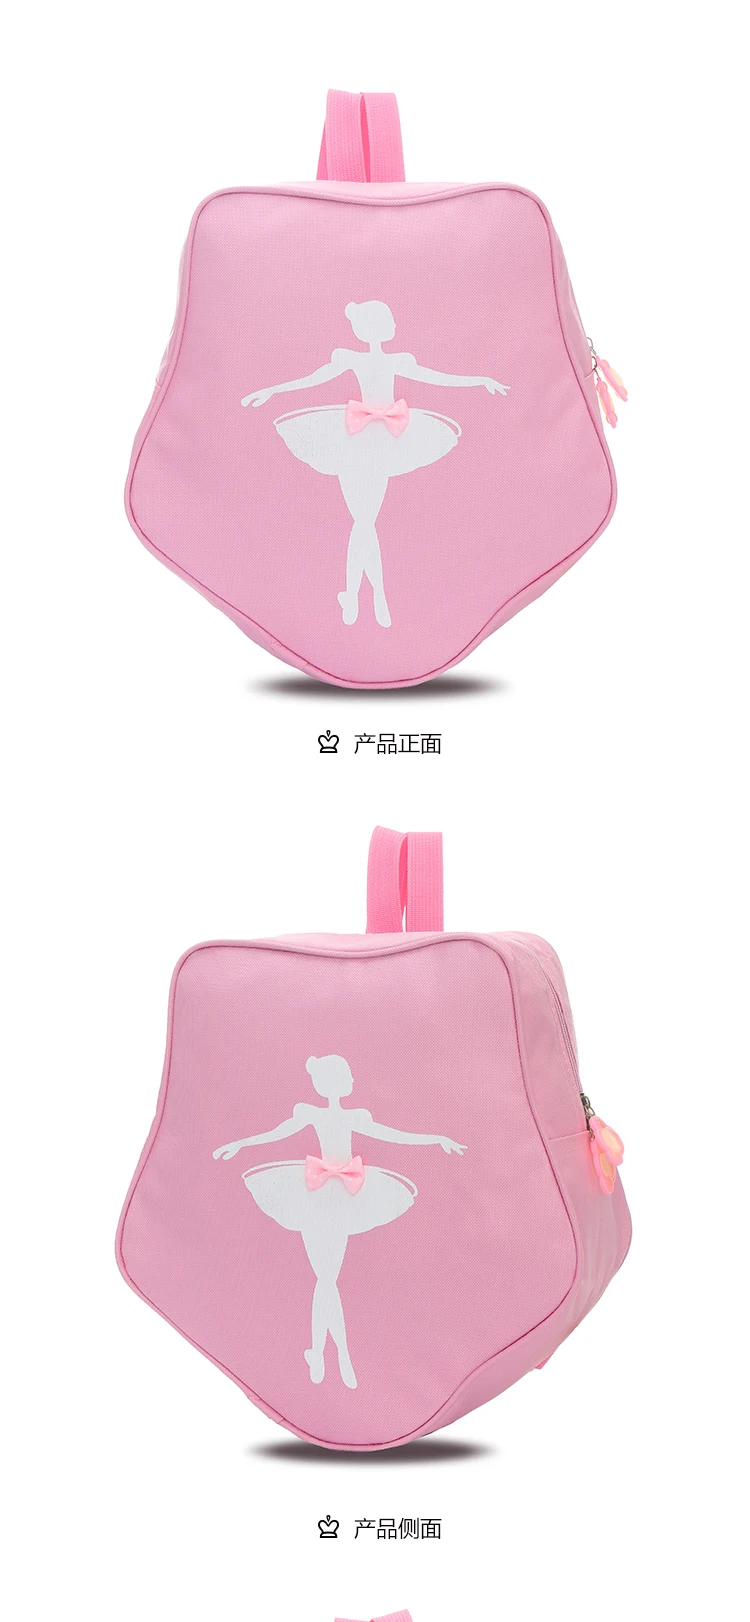 10 Цвета звезда Стиль балетный рюкзак для танцев балетная сумка розовый/зеленый Сумка для дискотеки s для балета для девочек, сумка для балета